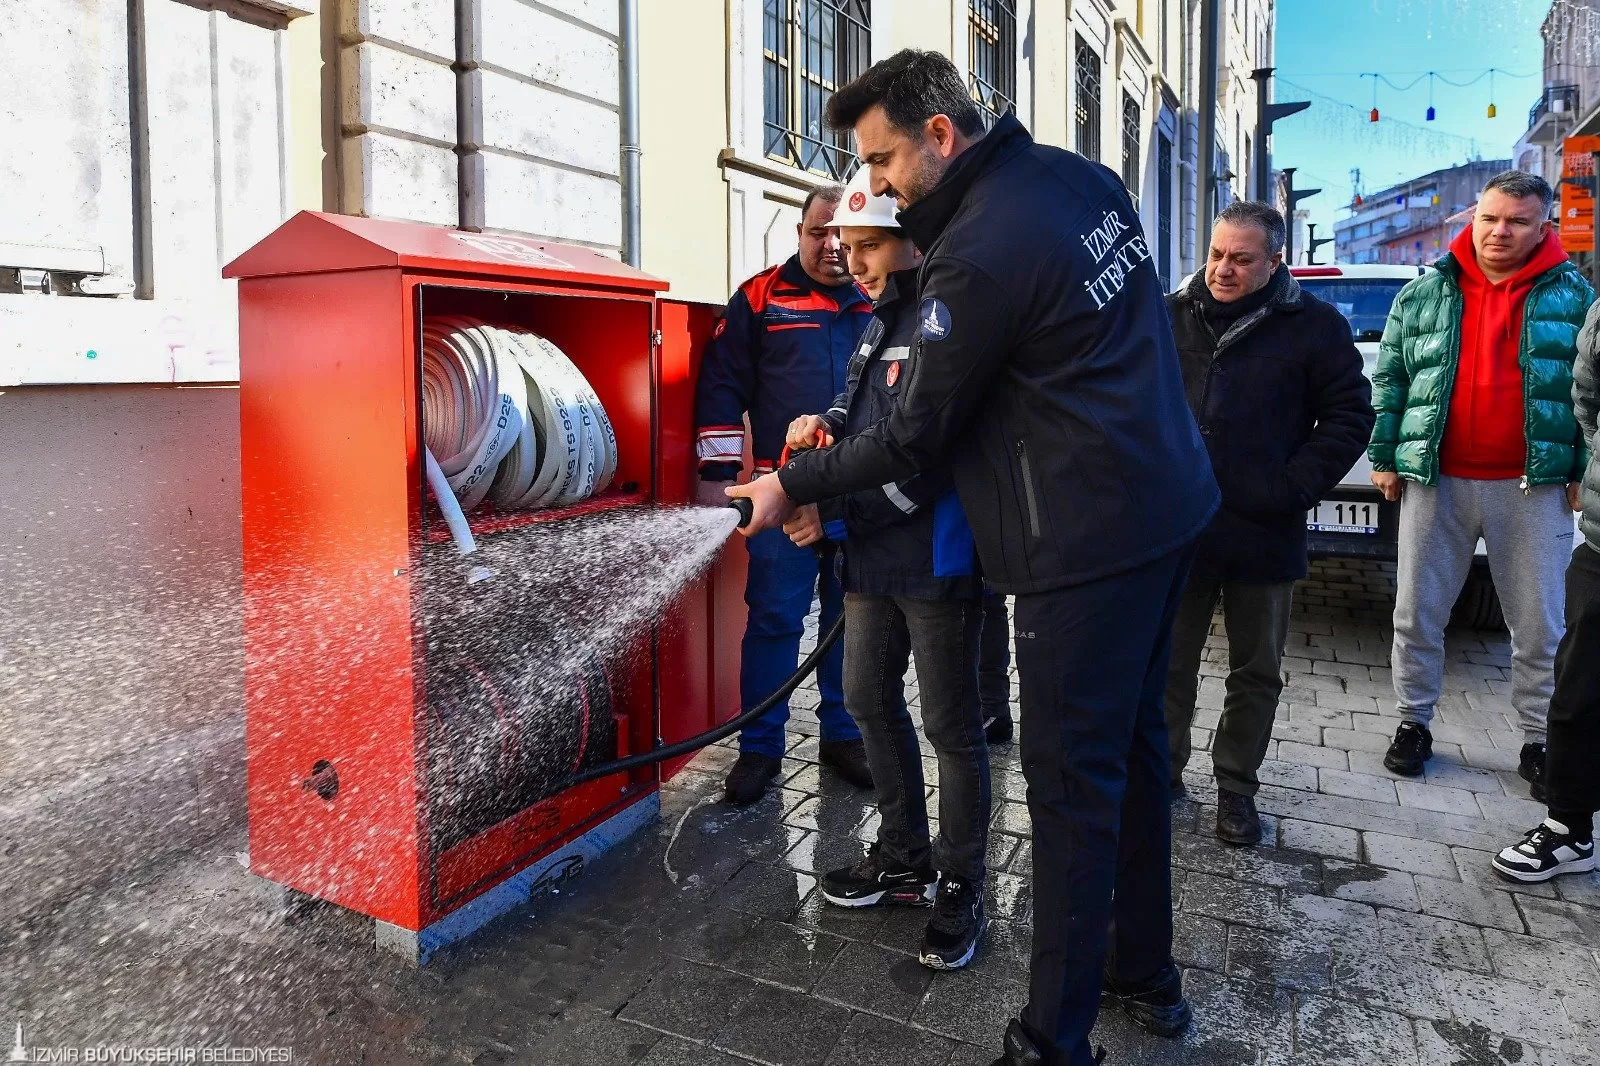 İzmir Büyükşehir Belediyesi, tarihi Kemeraltı Çarşısı'nda çıkabilecek yangınlara karşı önlem aldı. Çarşıda 12 noktaya yangın dolabı yerleştirildi ve esnafa yangın eğitimi verildi.